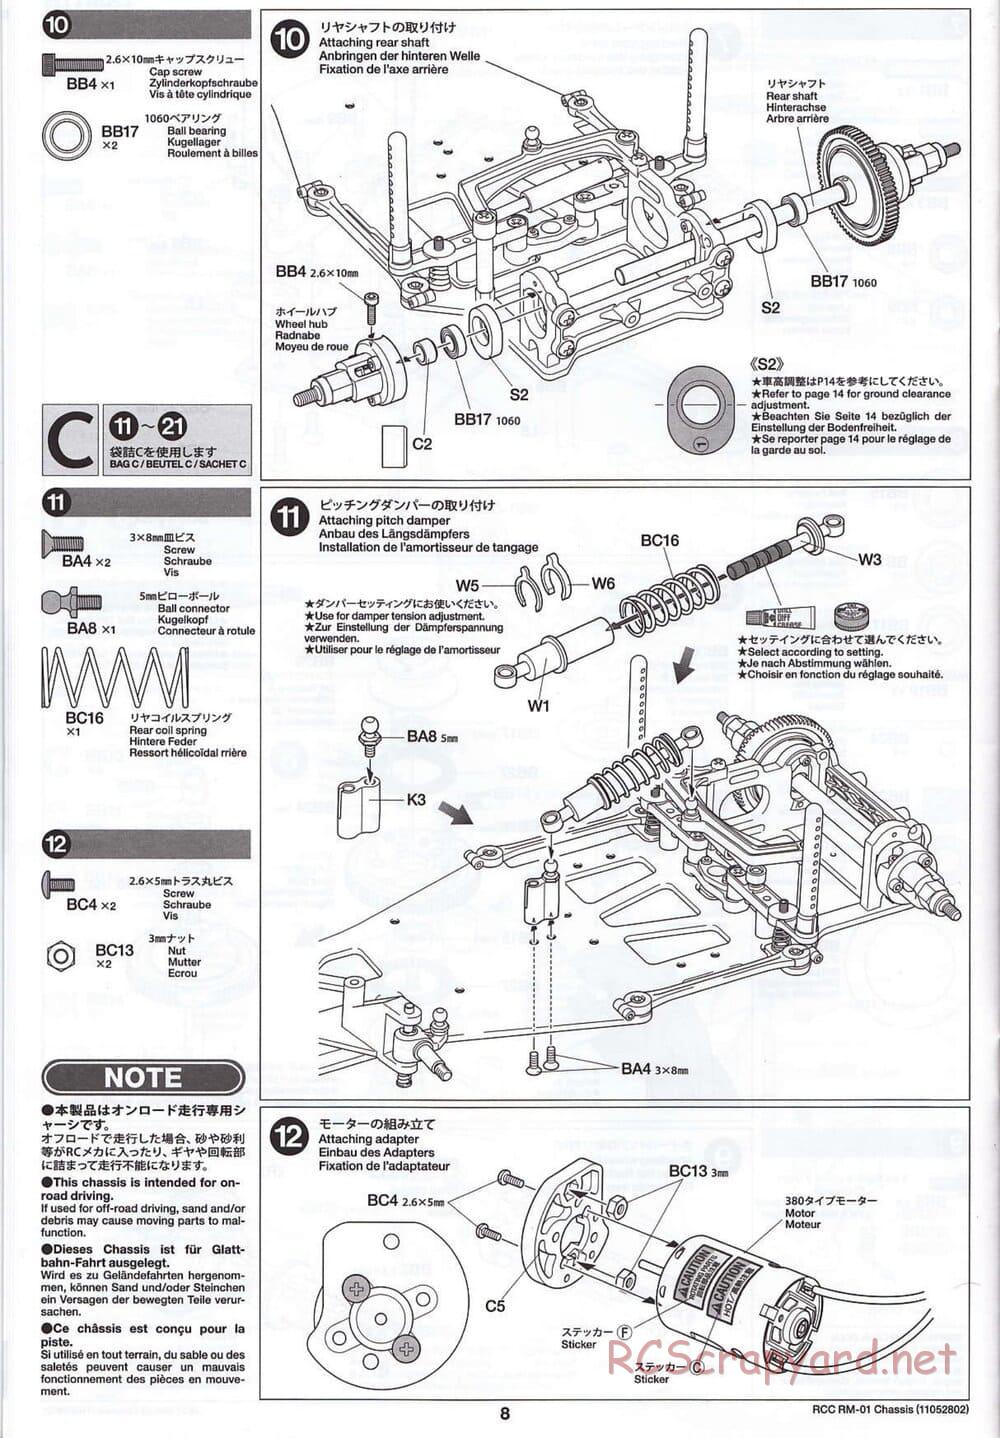 Tamiya - TA04-SS Chassis - Manual - Page 8